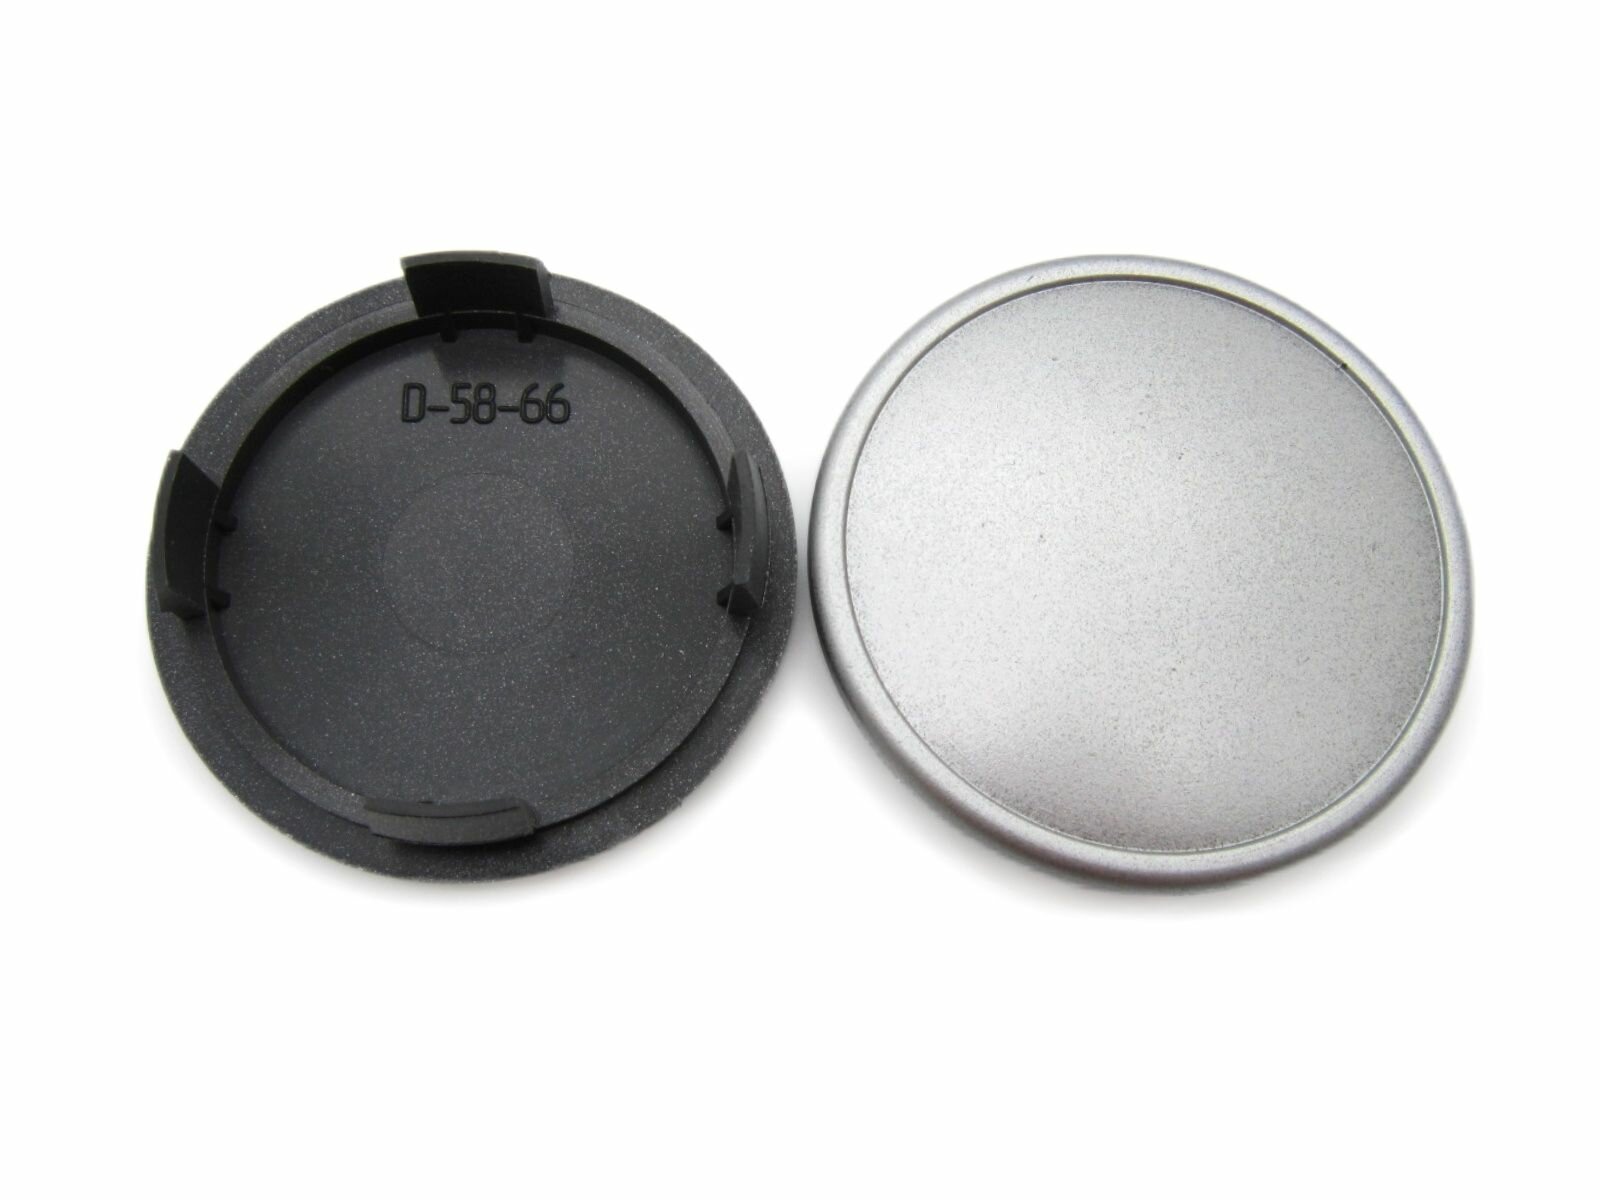 Колпачки заглушки на литые диски 66/58/12 мм, D-58-66, 2 шт.